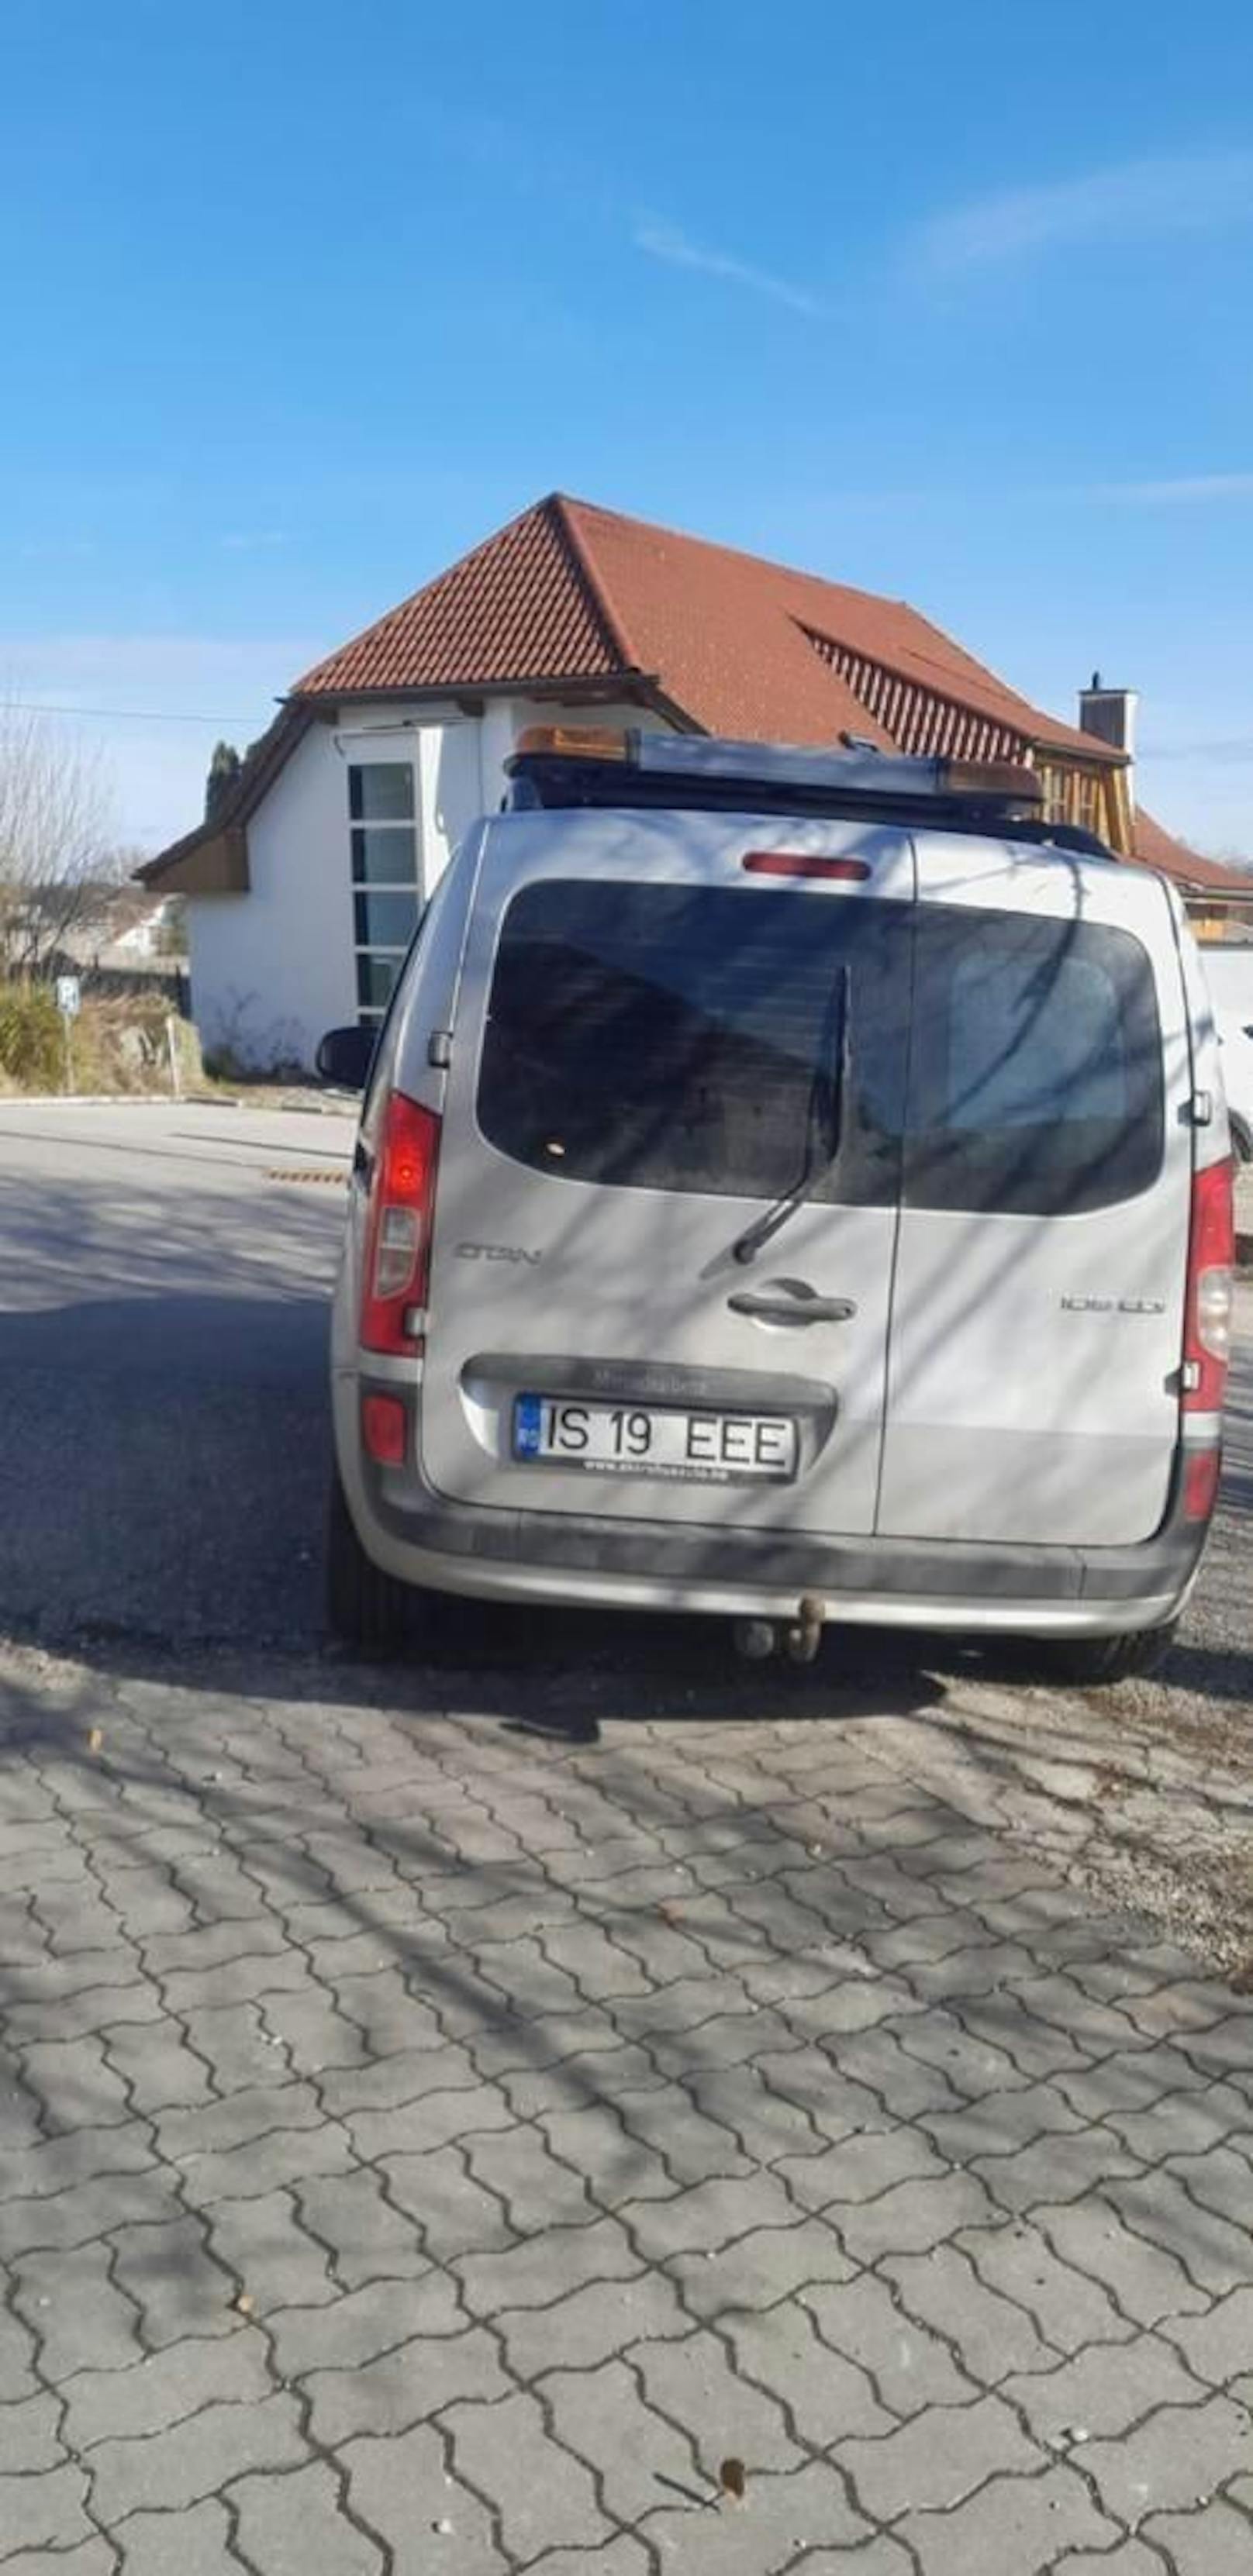 Der Lieferwagen des Mannes hat ein rumänisches Kennzeichen.